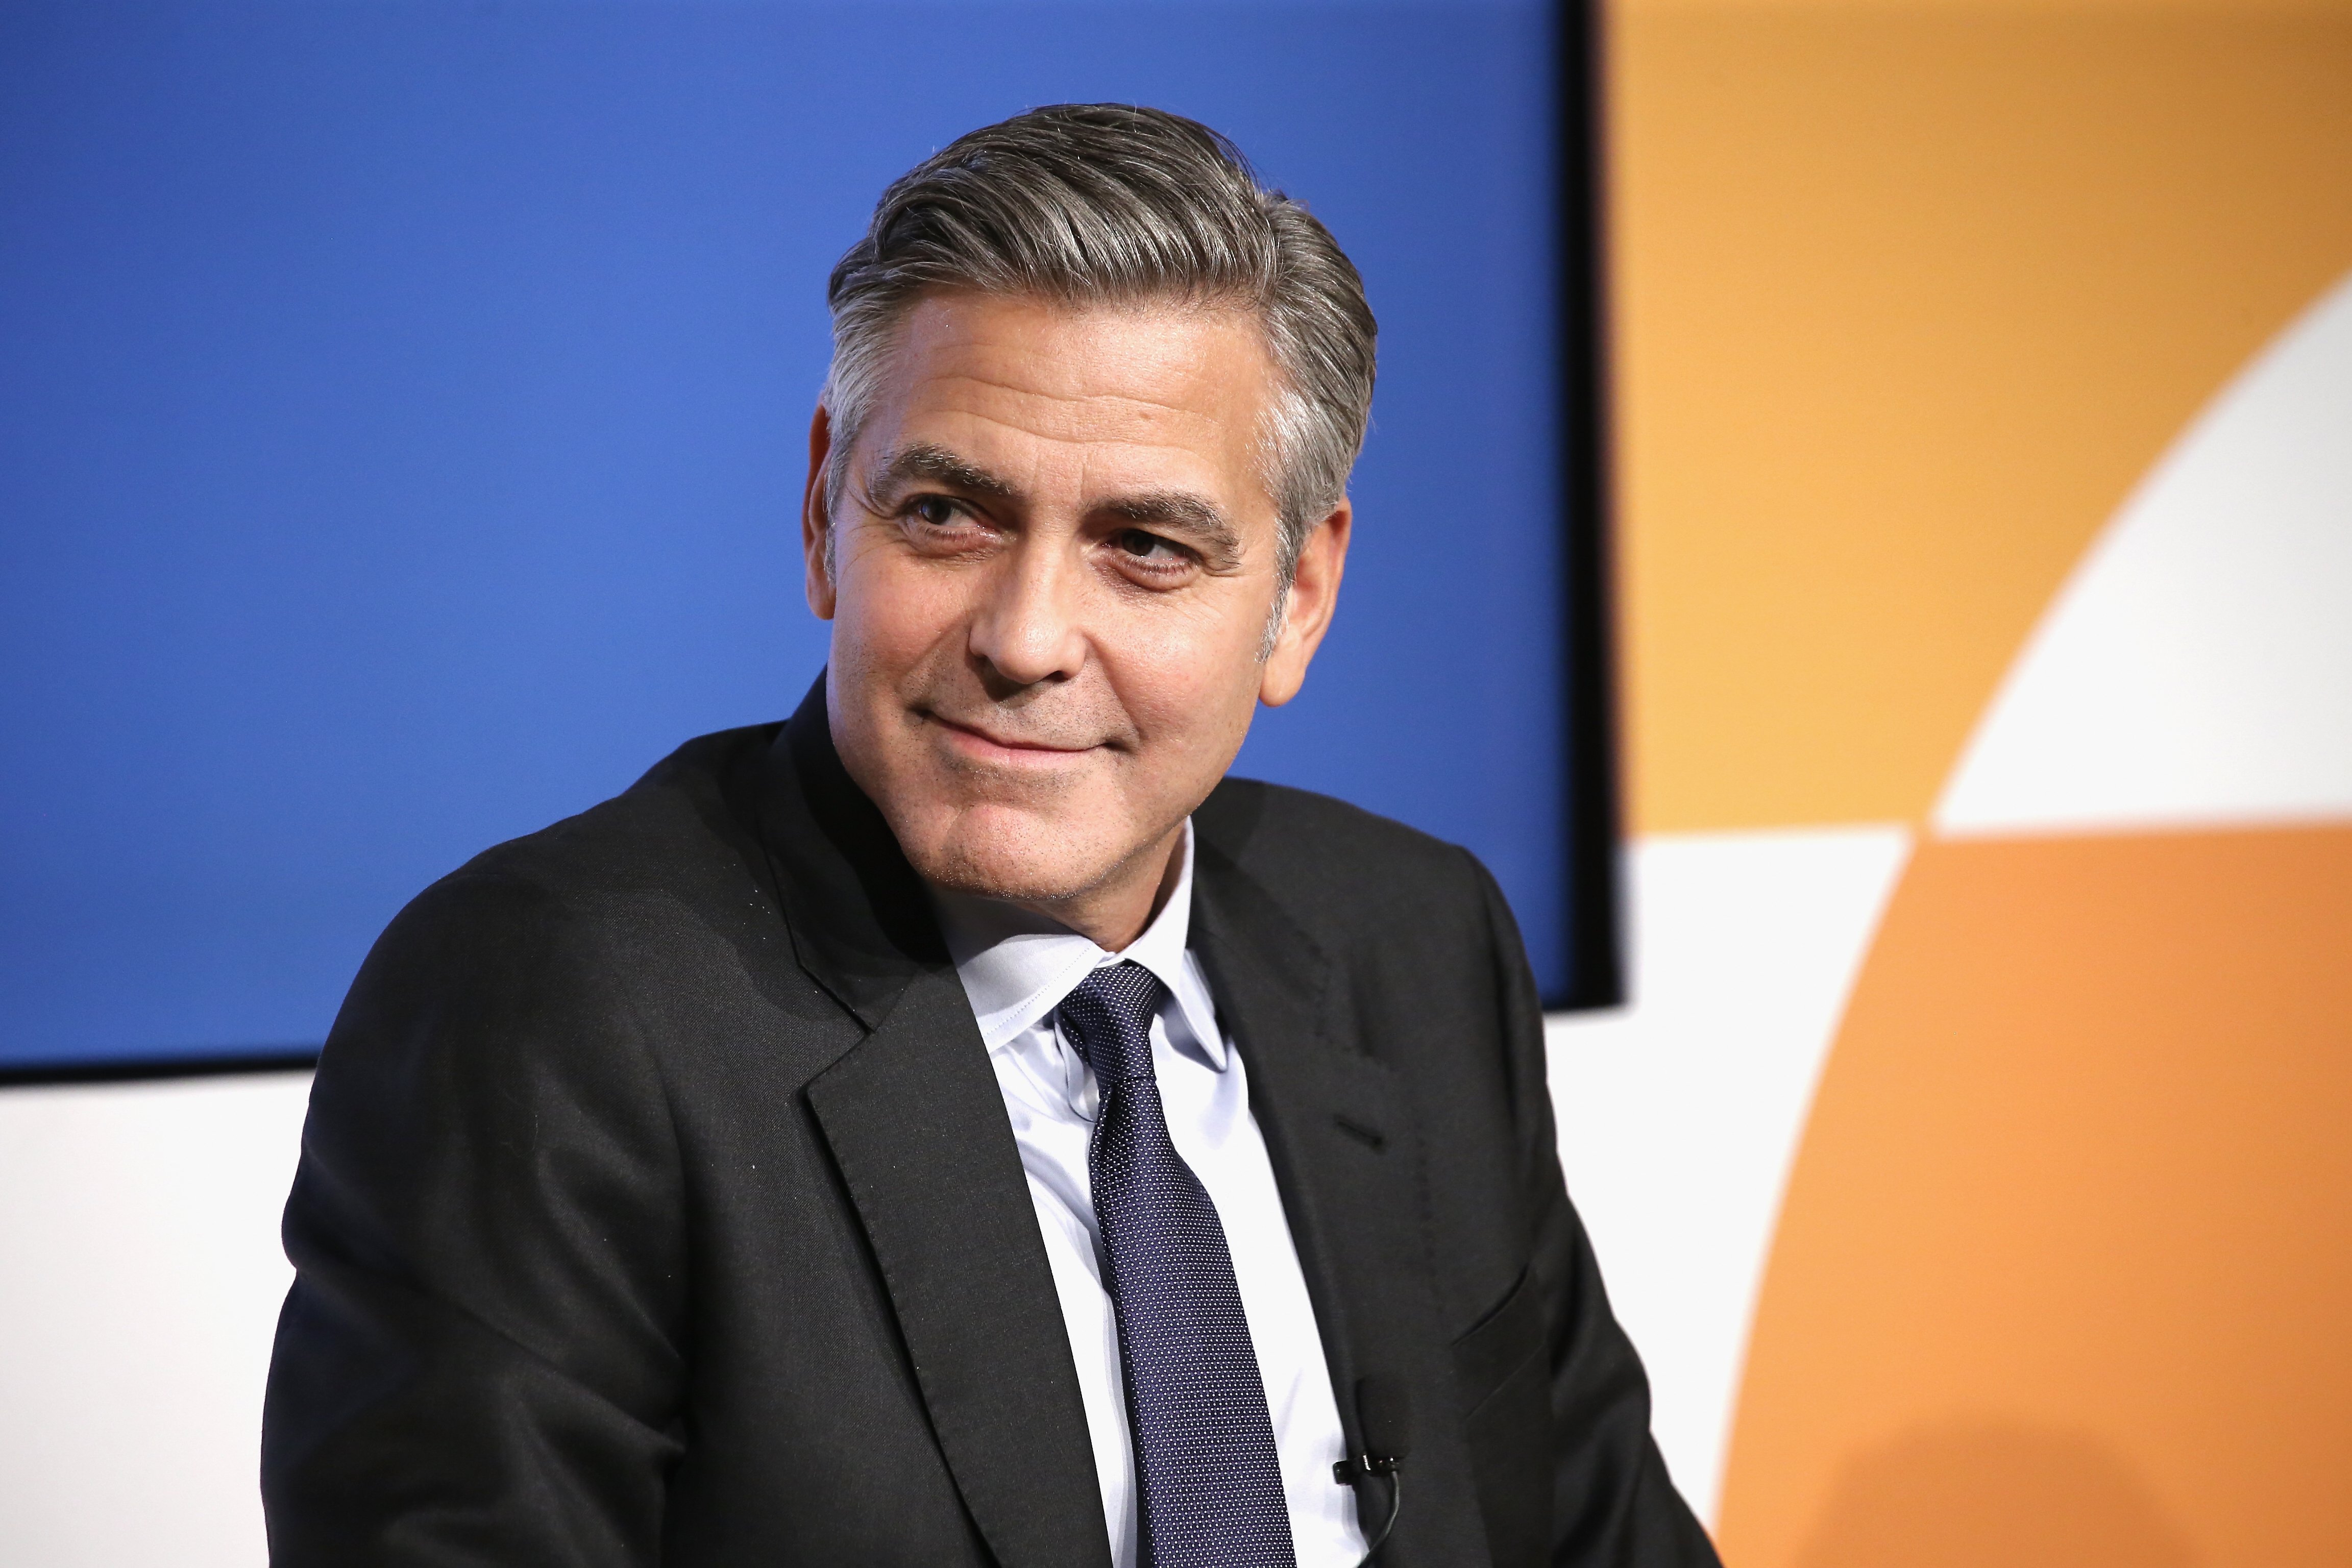 George Clooney en el escenario de la iniciativa The 100 Lives, el 10 de marzo de 2015 en Nueva York. | Foto: Getty Images